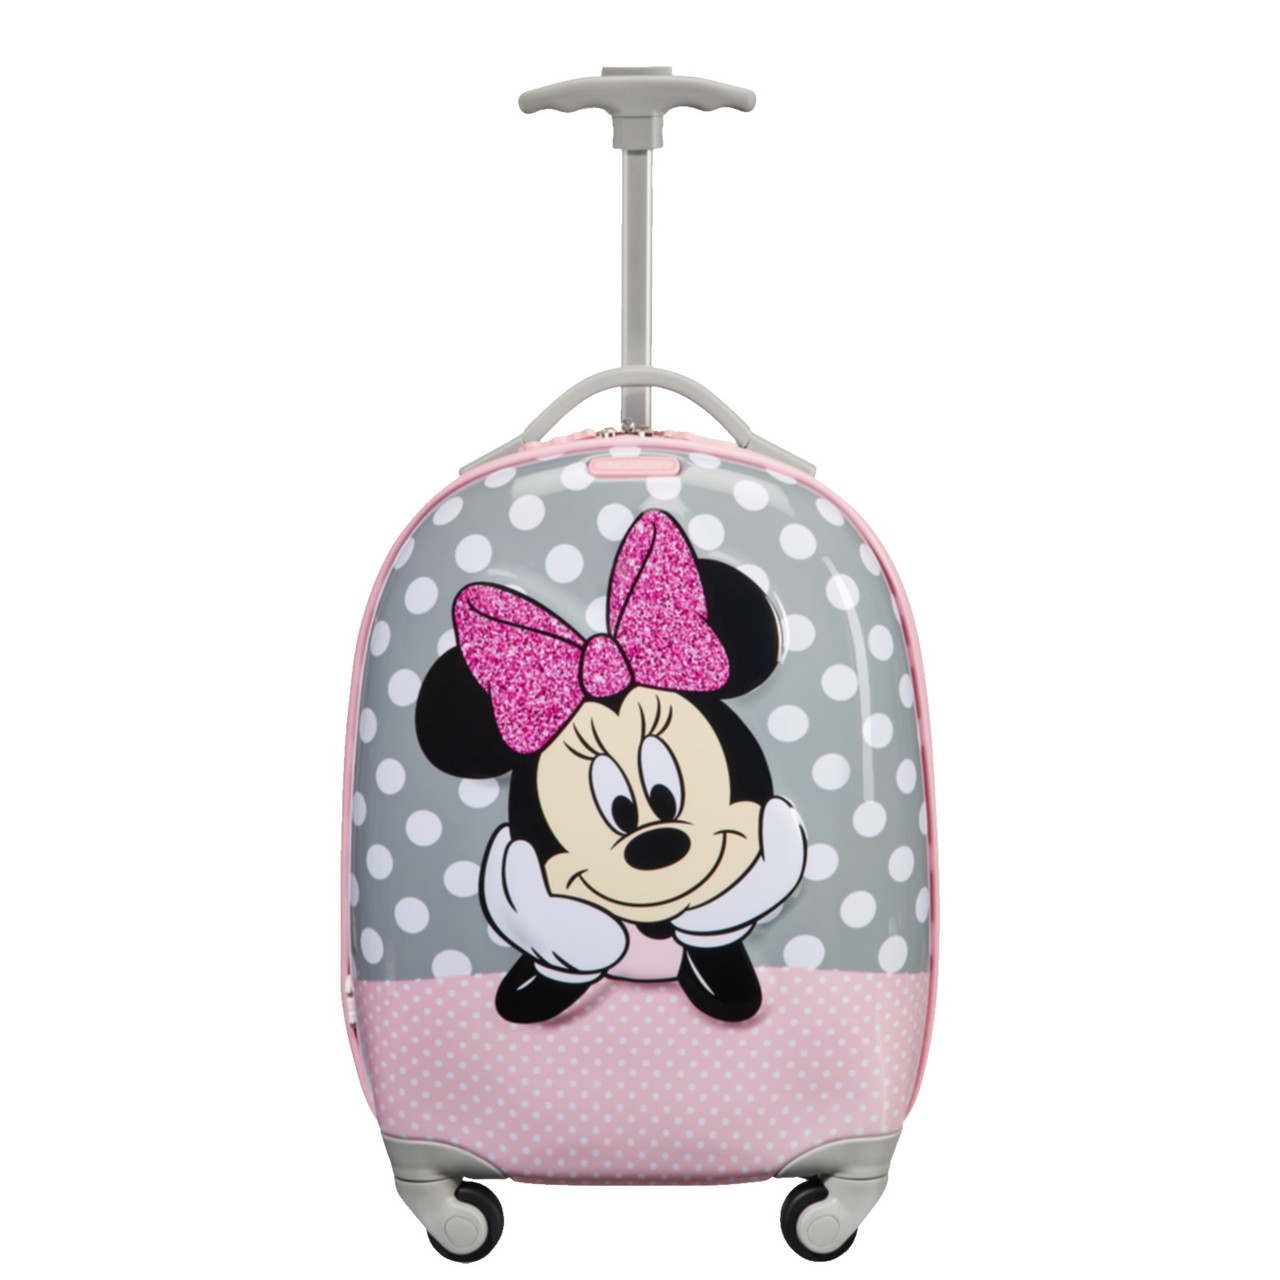 Samsonite Disney Ultimate 2.0 Children's Suitcase at Luggage Superstore